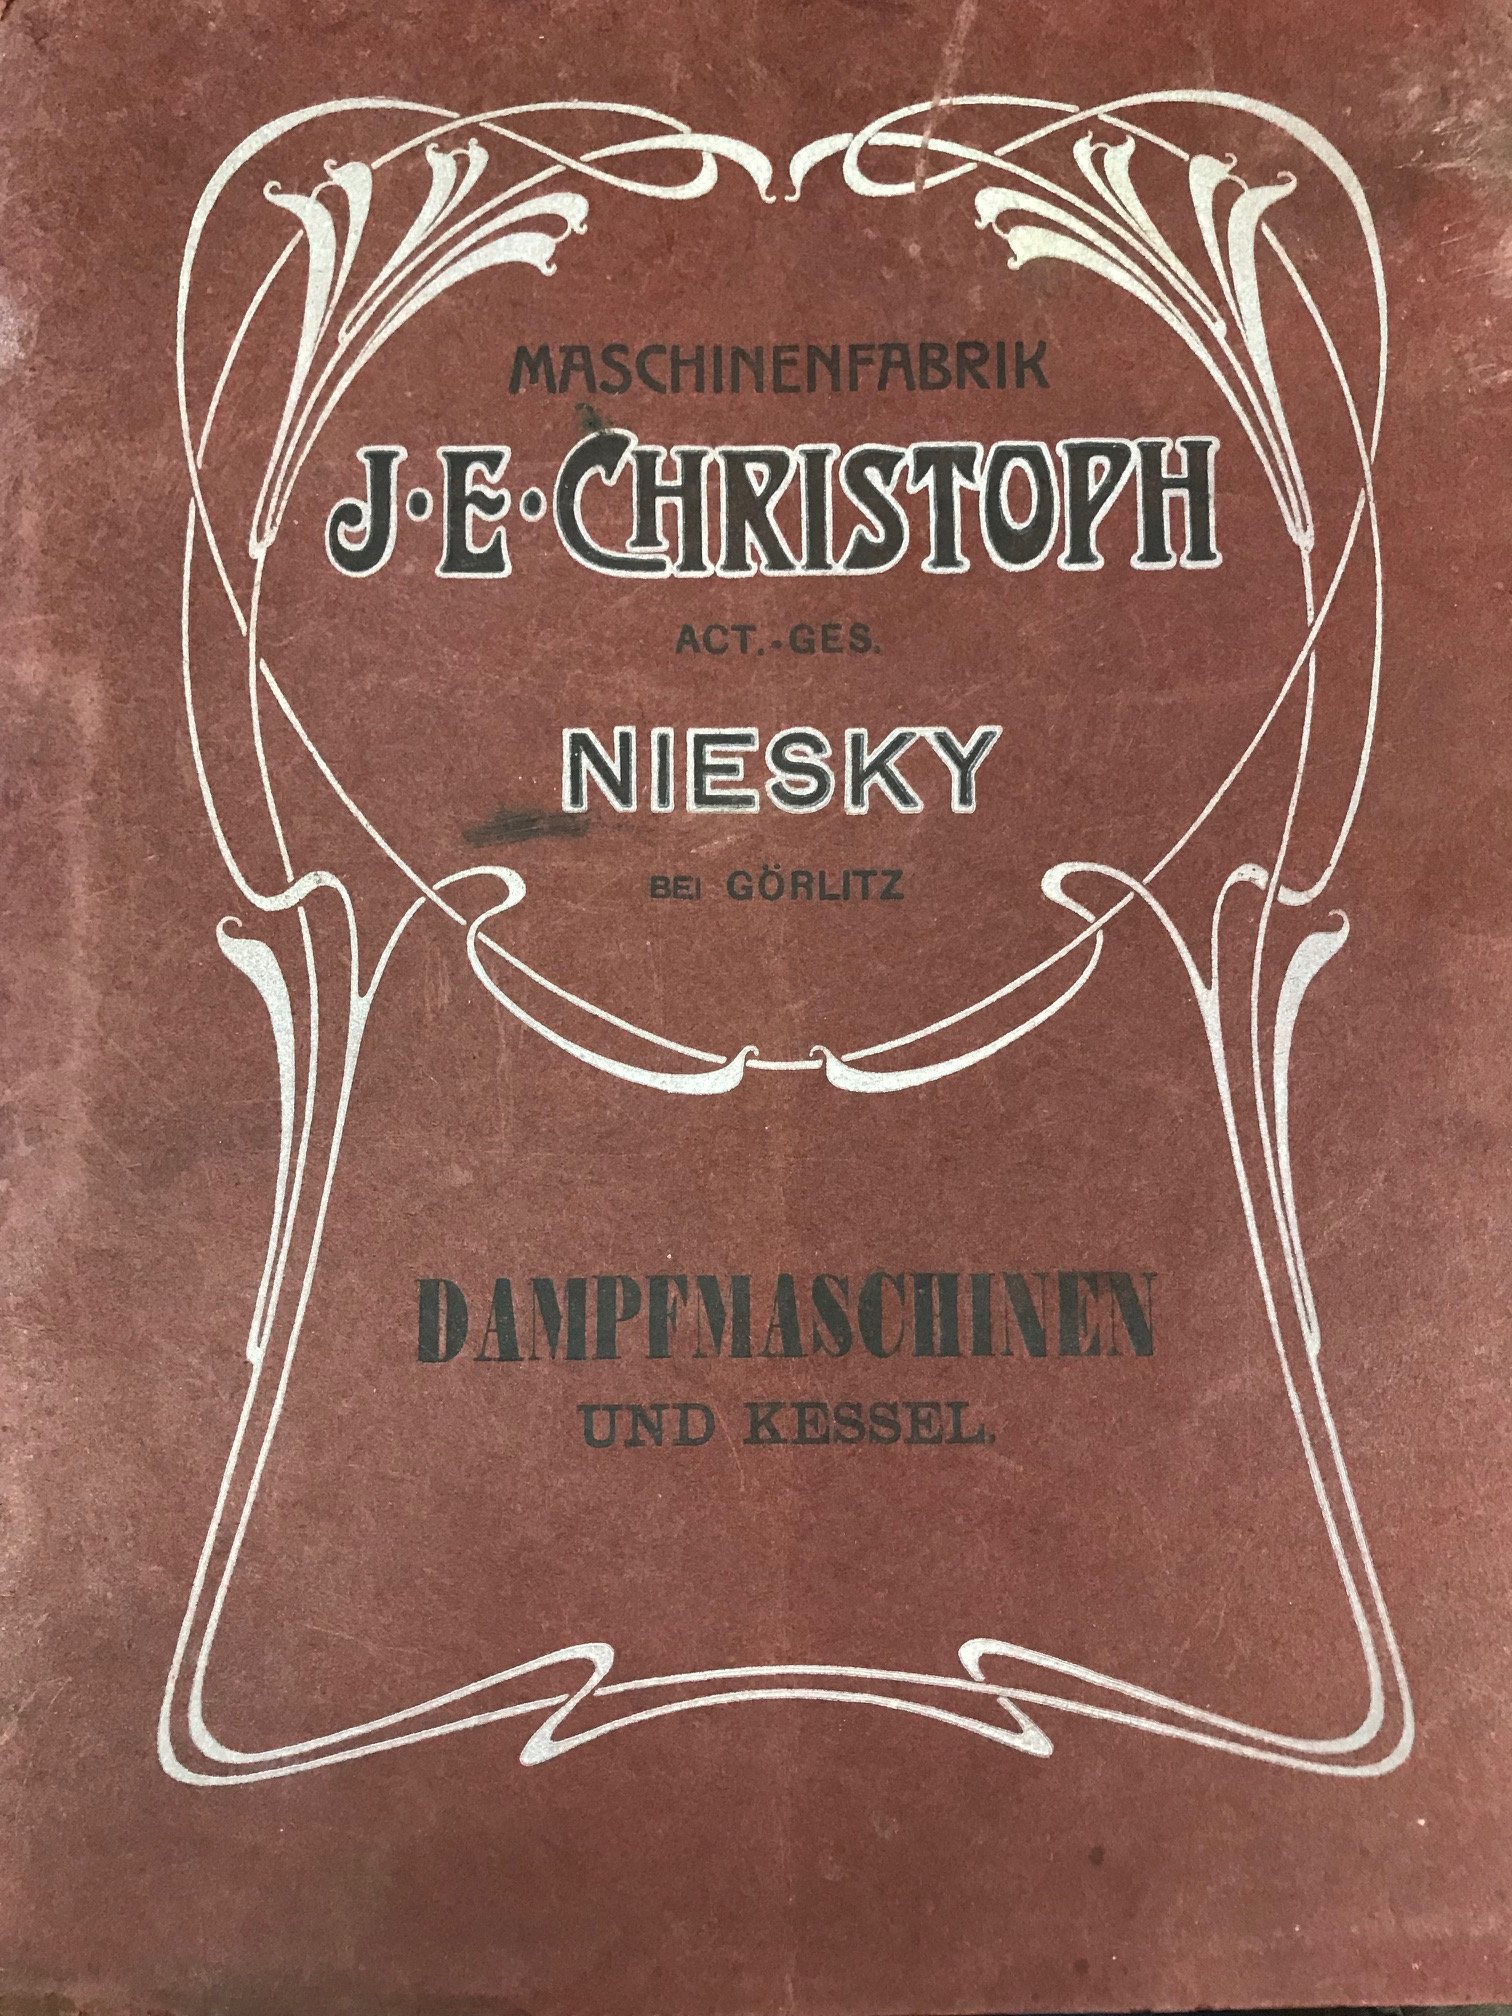 Dampfmaschinen und Kessel - Referenzmappe der Maschinenfabrik J. E. Christoph AG (Museum Niesky CC BY-NC-ND)